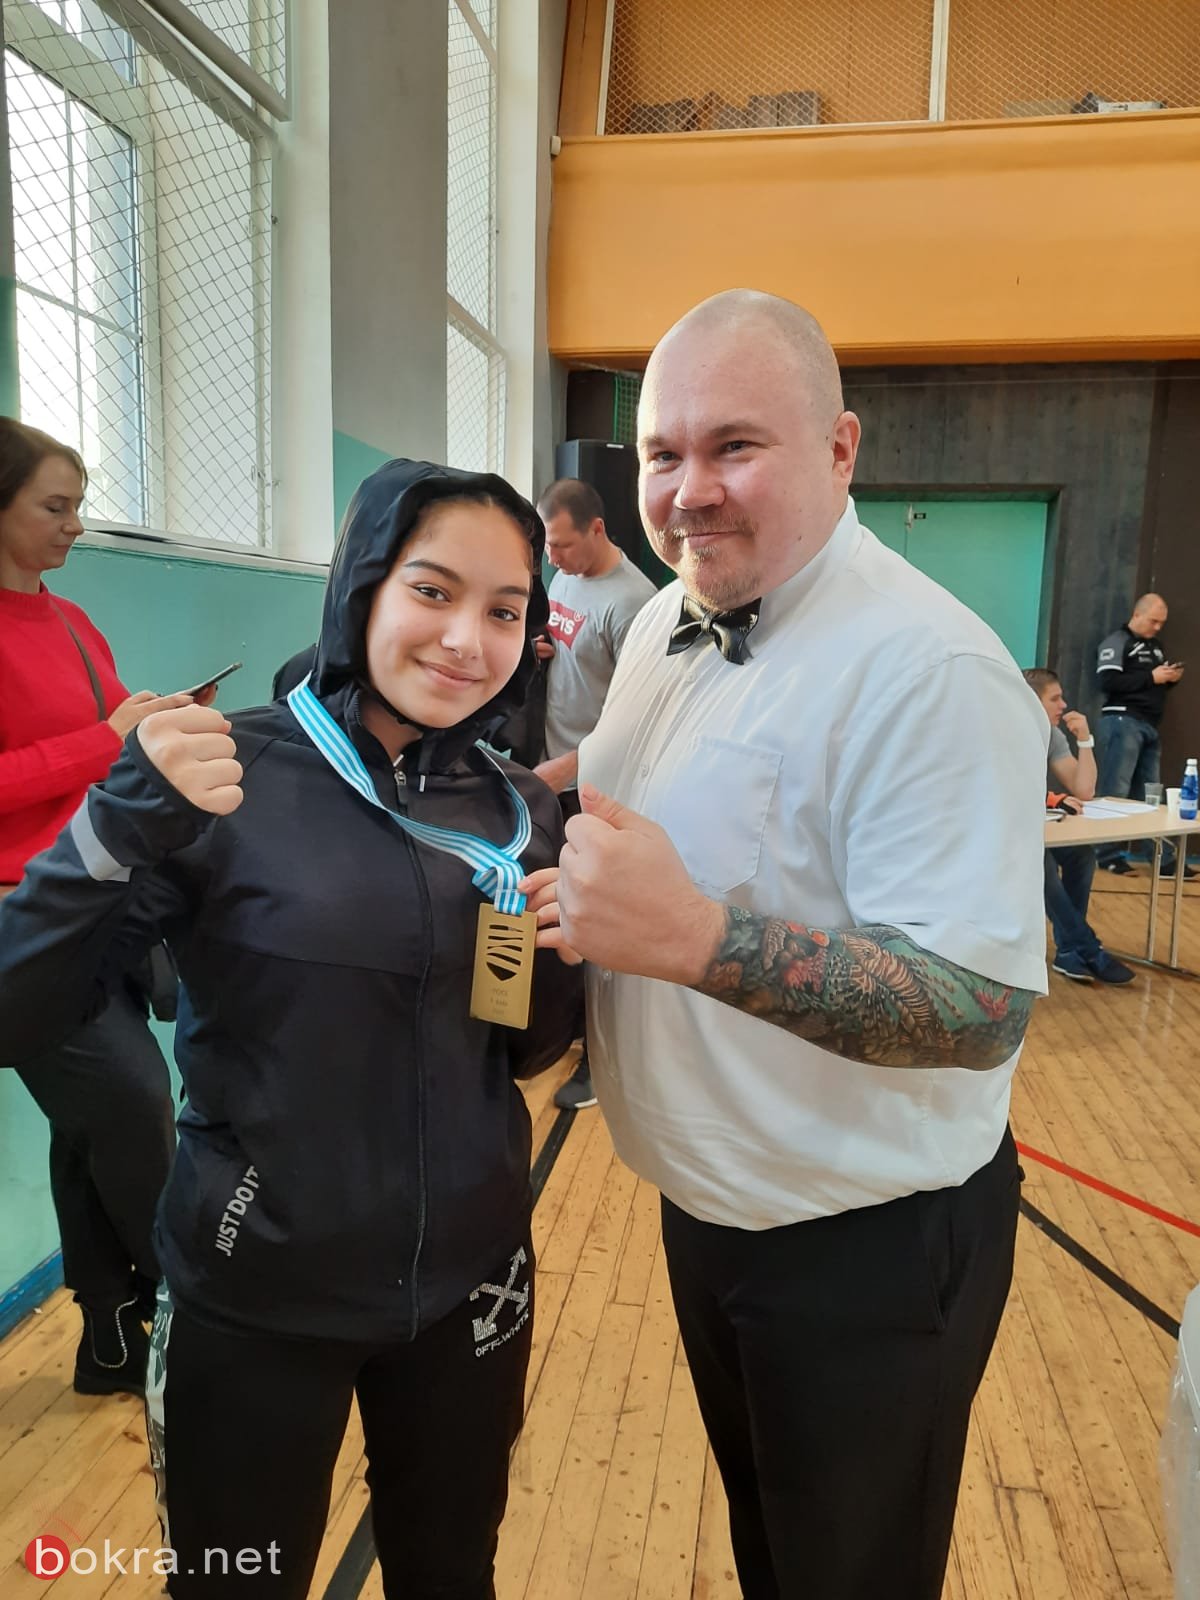 الملاكمة ديان بياضي تحصد المرتبة الأولى في بطولة أوروبا للناشئين في أستونيا-2